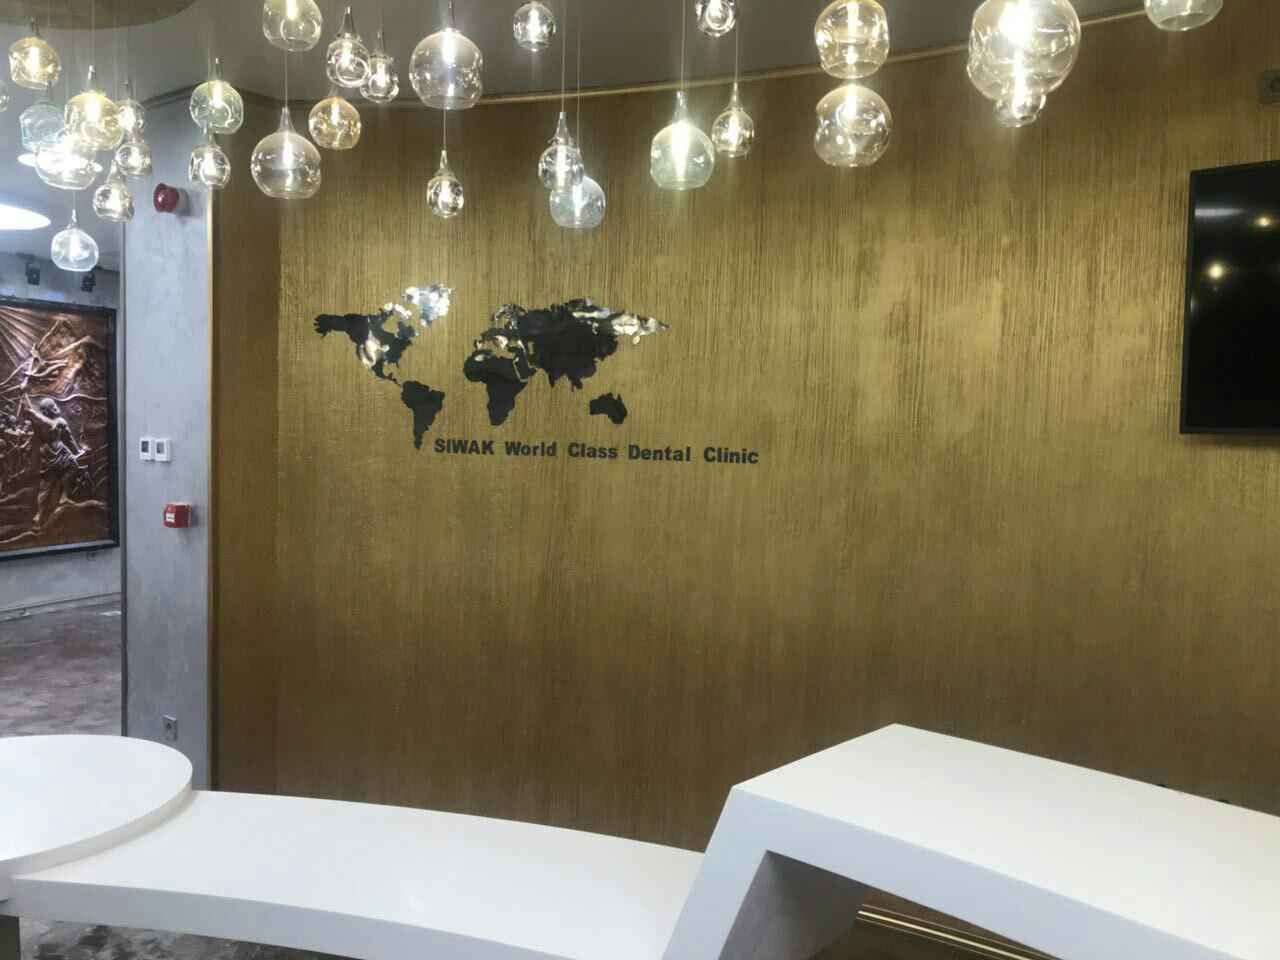 افتتاح کلینیک دندانپزشکی سیواک